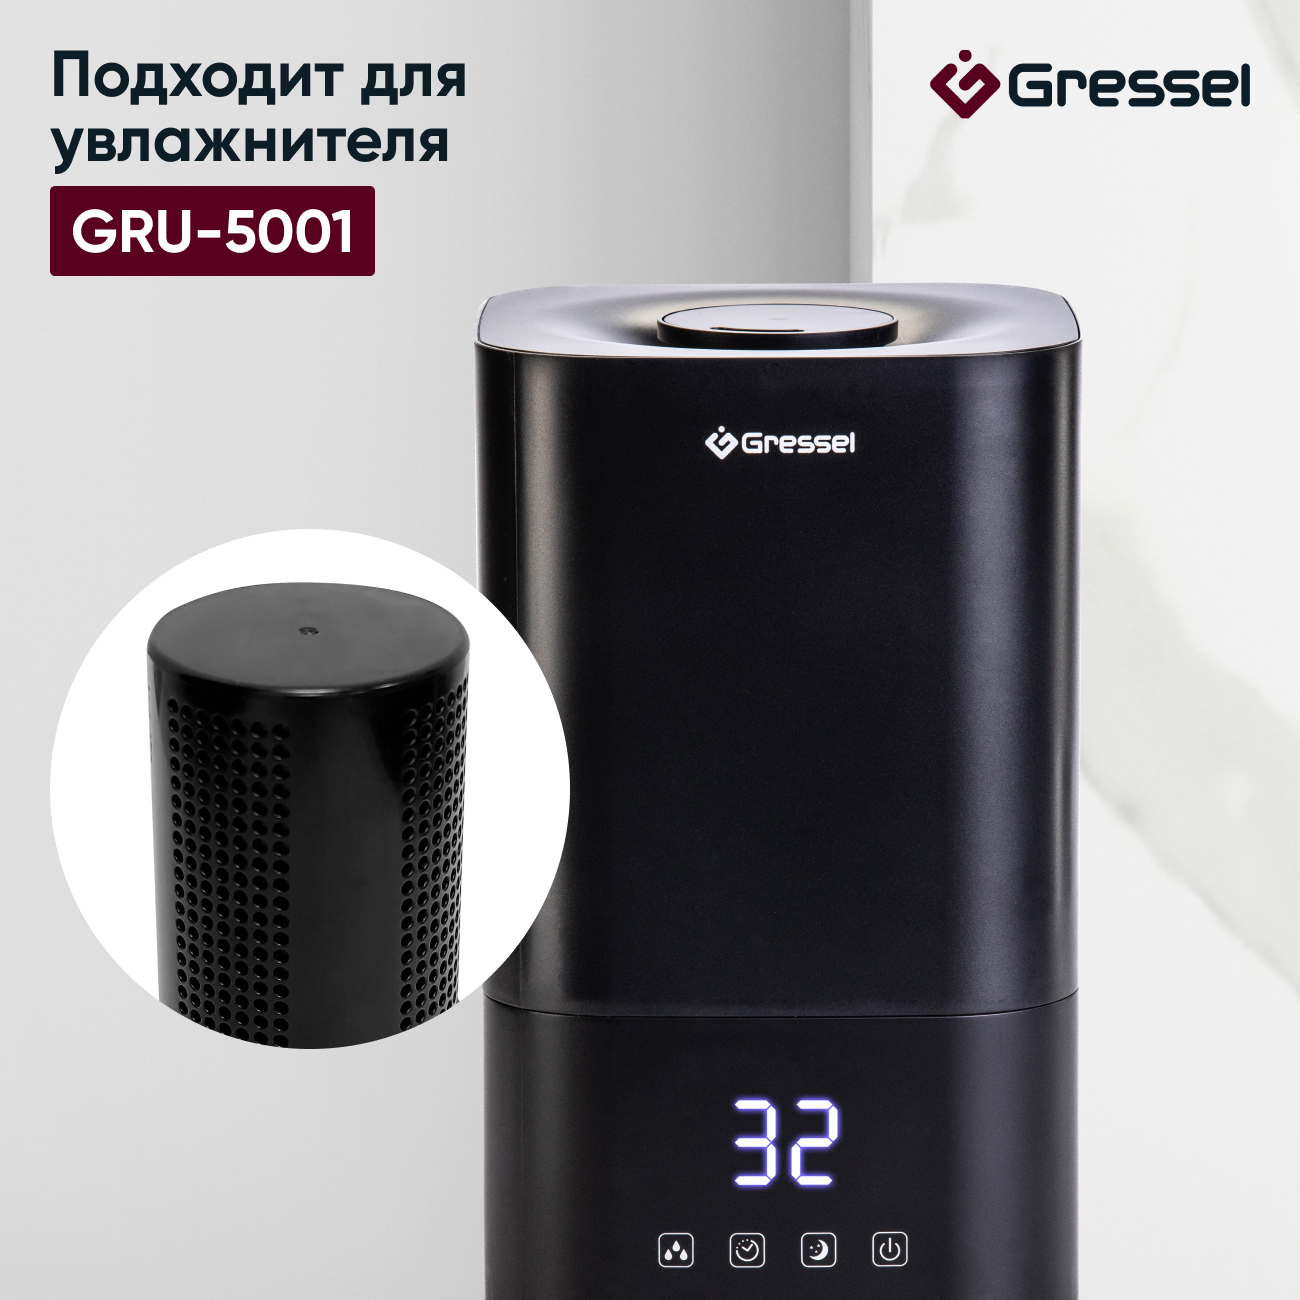 Фильтр увлажнителя воздуха Gressel G-5001 для модели GRU-5001 картридж для увлажнителя атмос